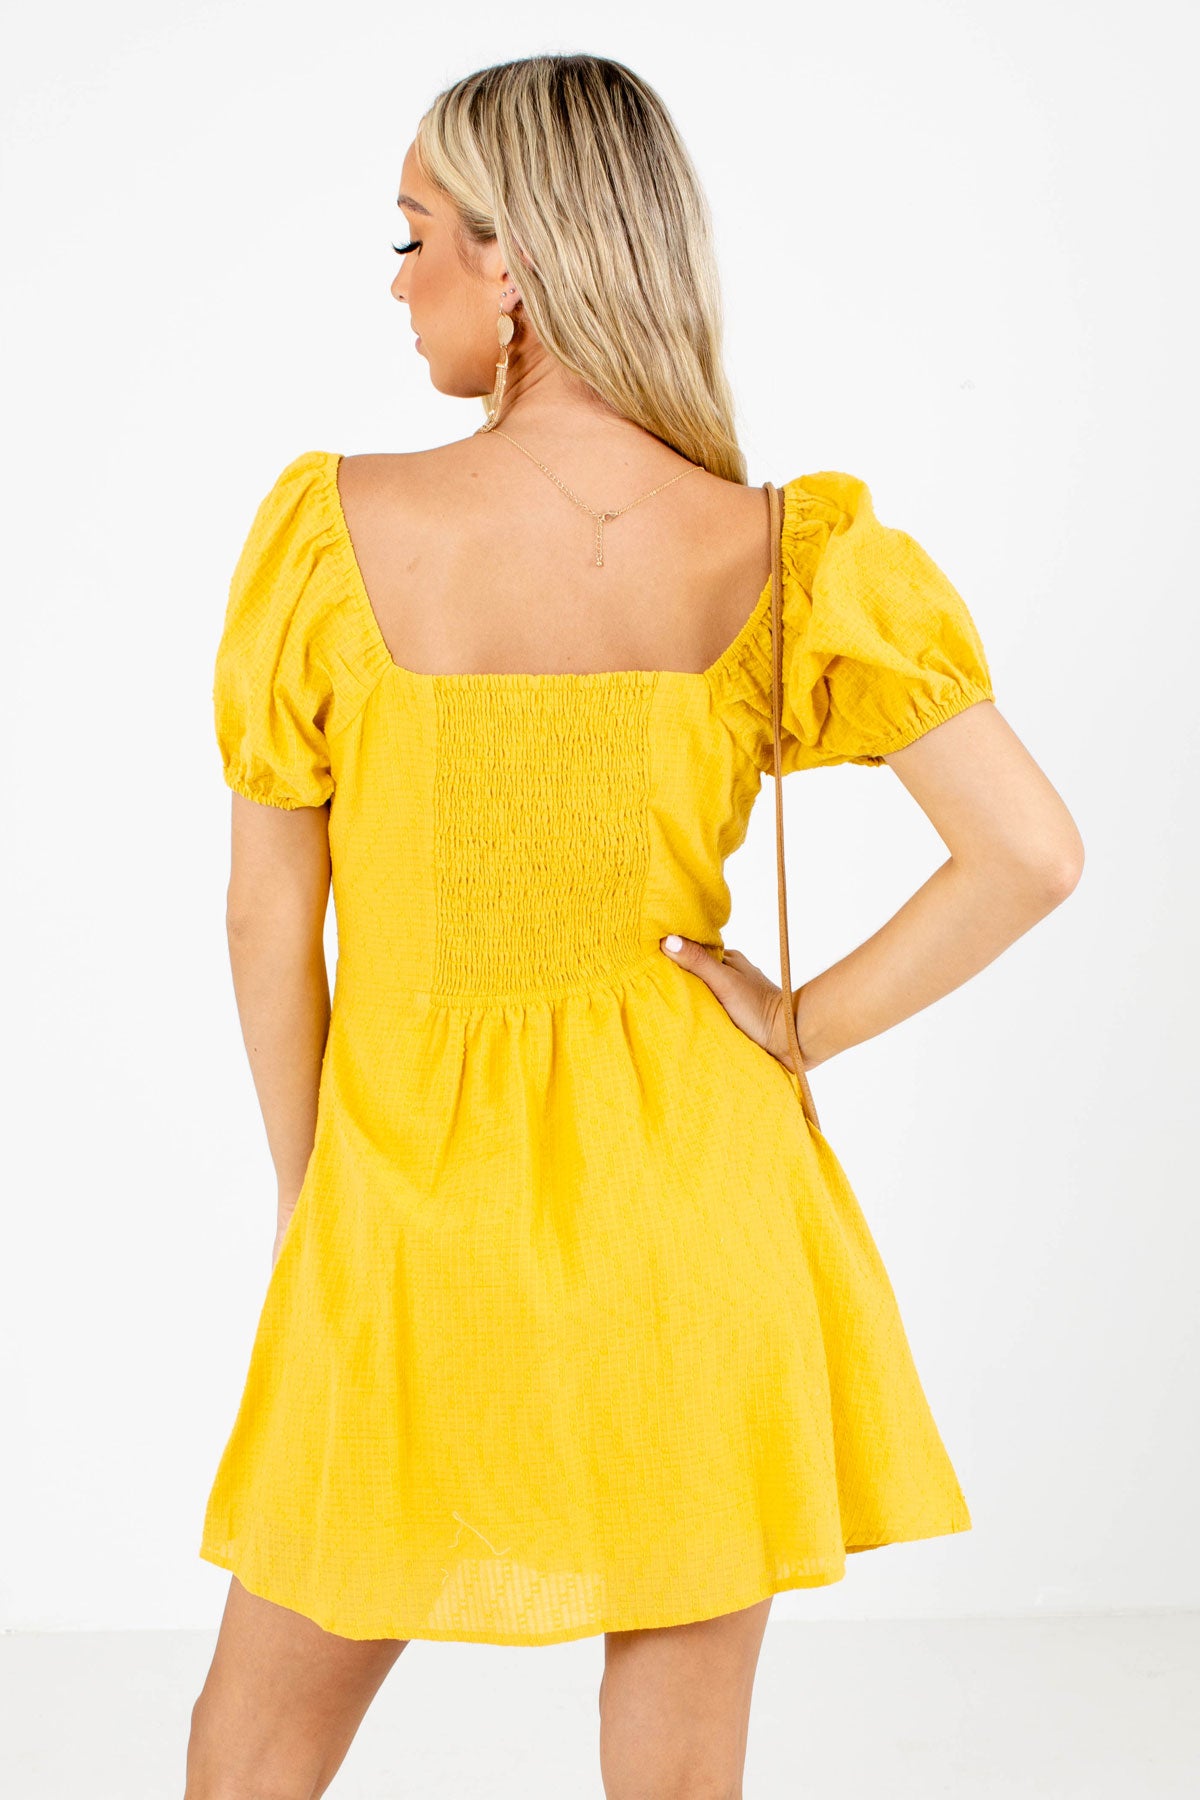 Women's Yellow Lightweight Boutique Mini Dress